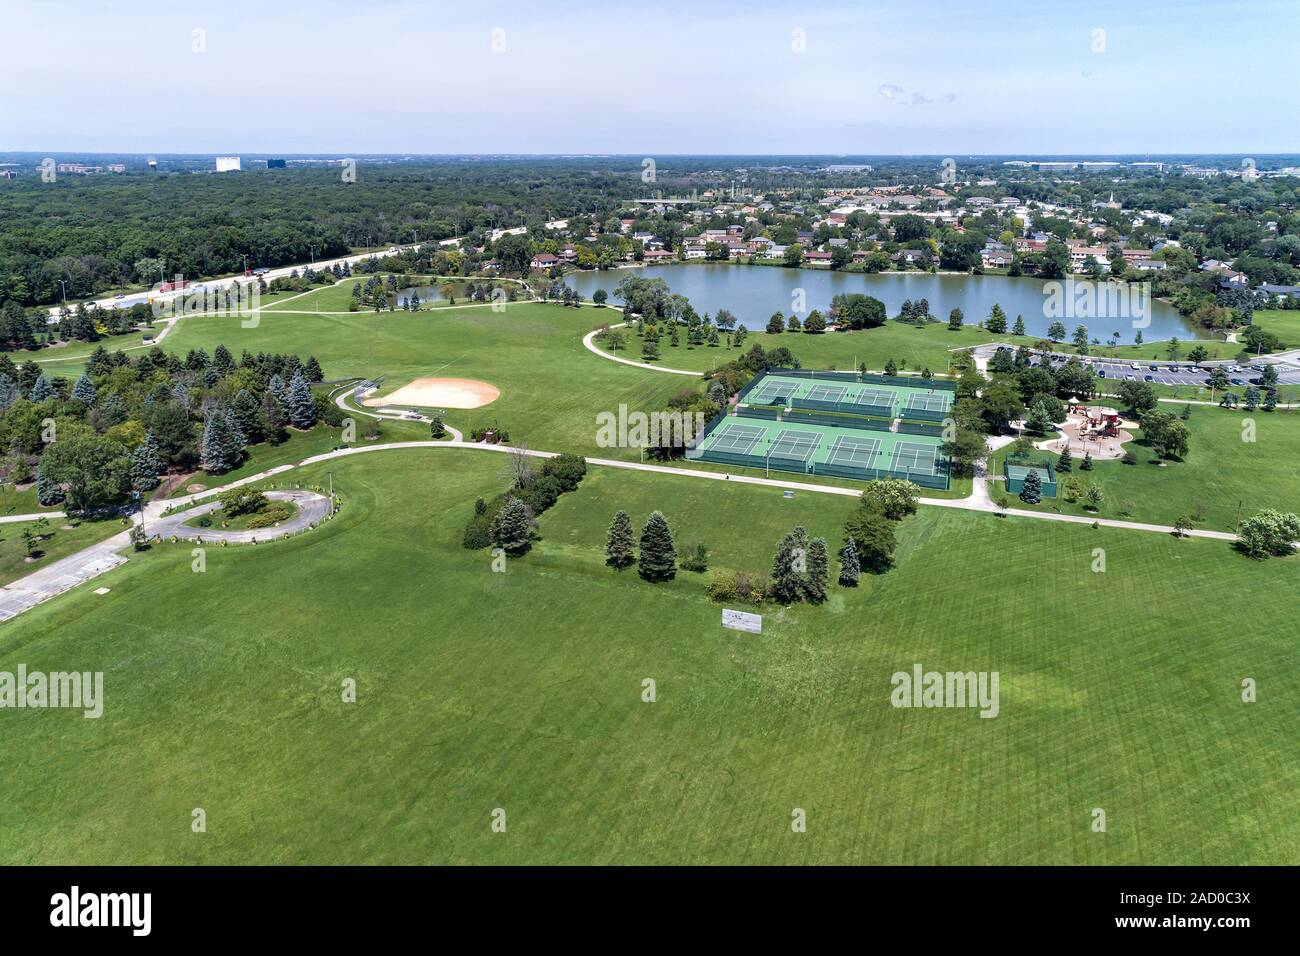 Vue aérienne d'un réseau express régional park district avec un terrain de soccer, tennis, lac et aire de jeux à Northbrook, IL. USA Banque D'Images